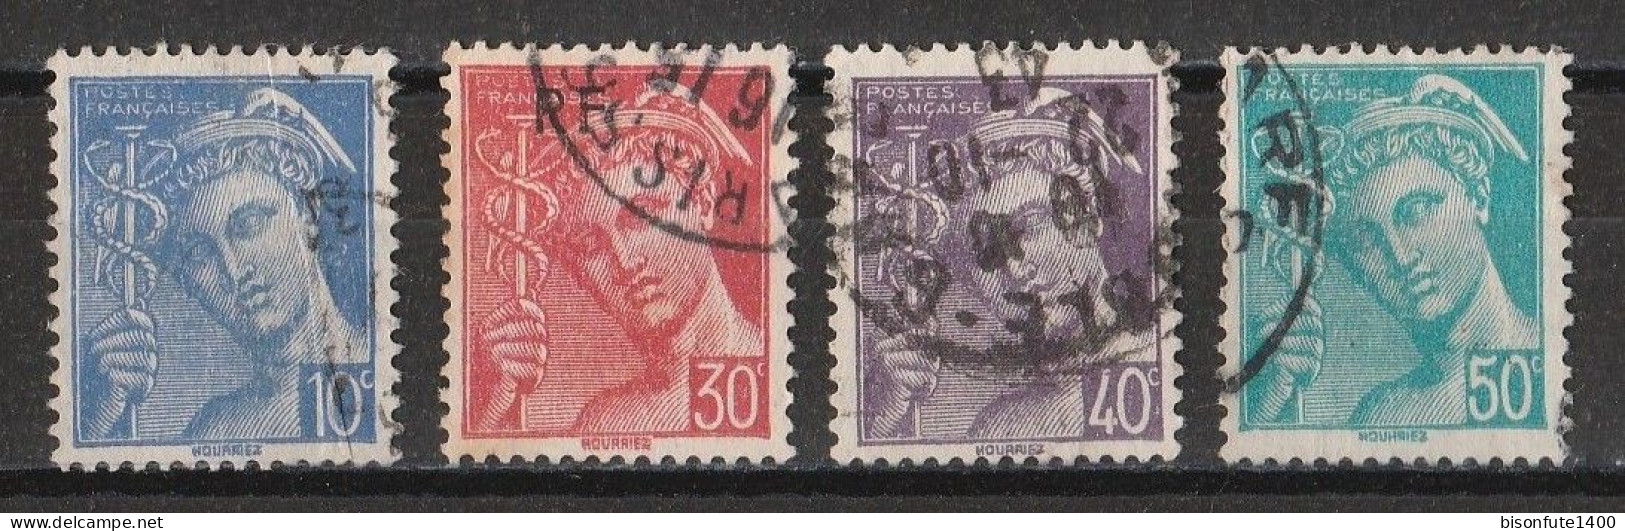 France 1942 : Timbres Yvert & Tellier N° 546 - 547 - 548 - 549 Et 552 Avec Oblitérations Rondes. - Gebruikt